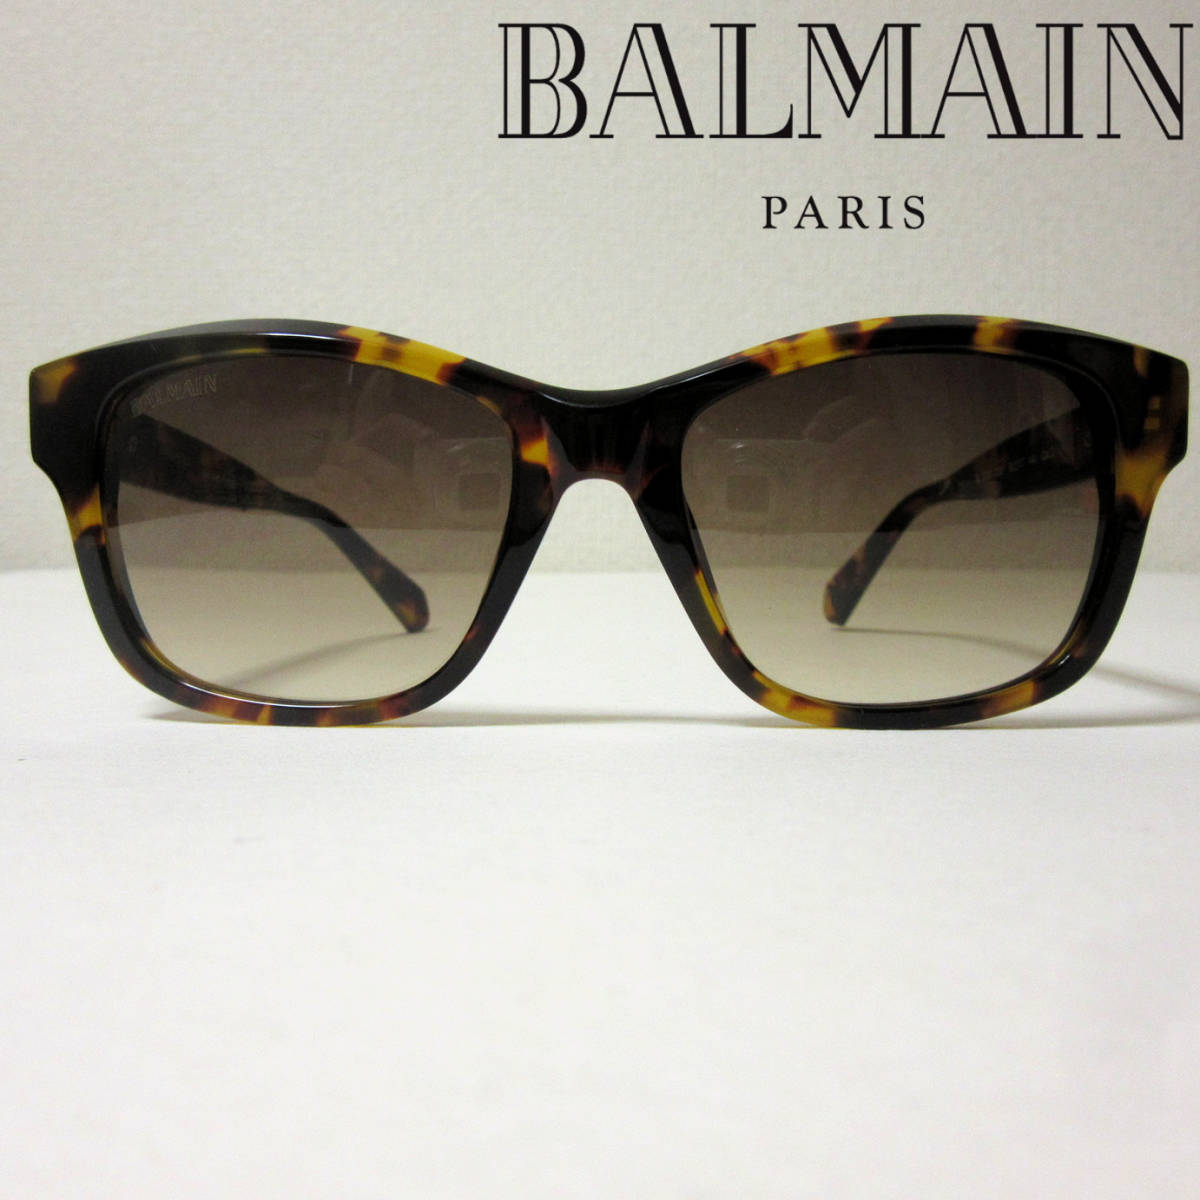 新品 BALMAIN PARIS バルマン フランス製 サングラス トータスシェル スクエア ウェリントン メンズ レディース ユニセックス ブラウン